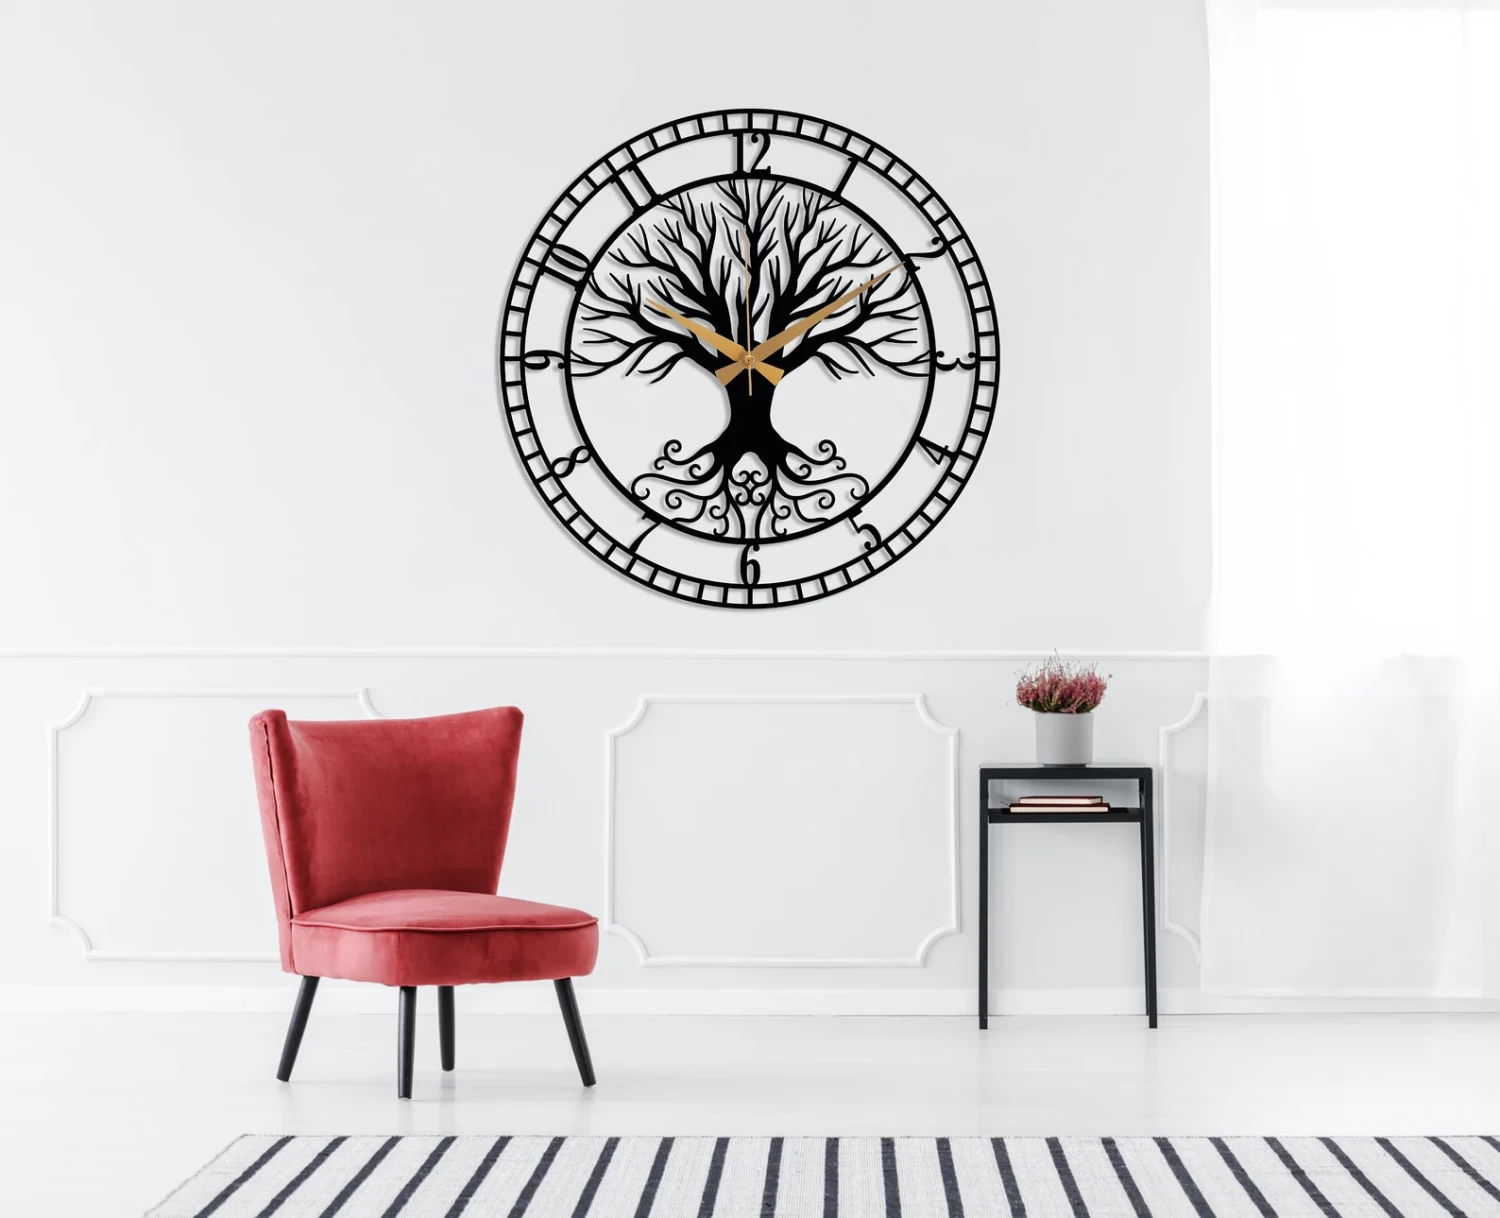 Metal Wall Clock, Black Large Wall Clock, Tree Clock, Silent Mid-Century Wall Clock,Modern Living Room Clock Art,Horloge Murale